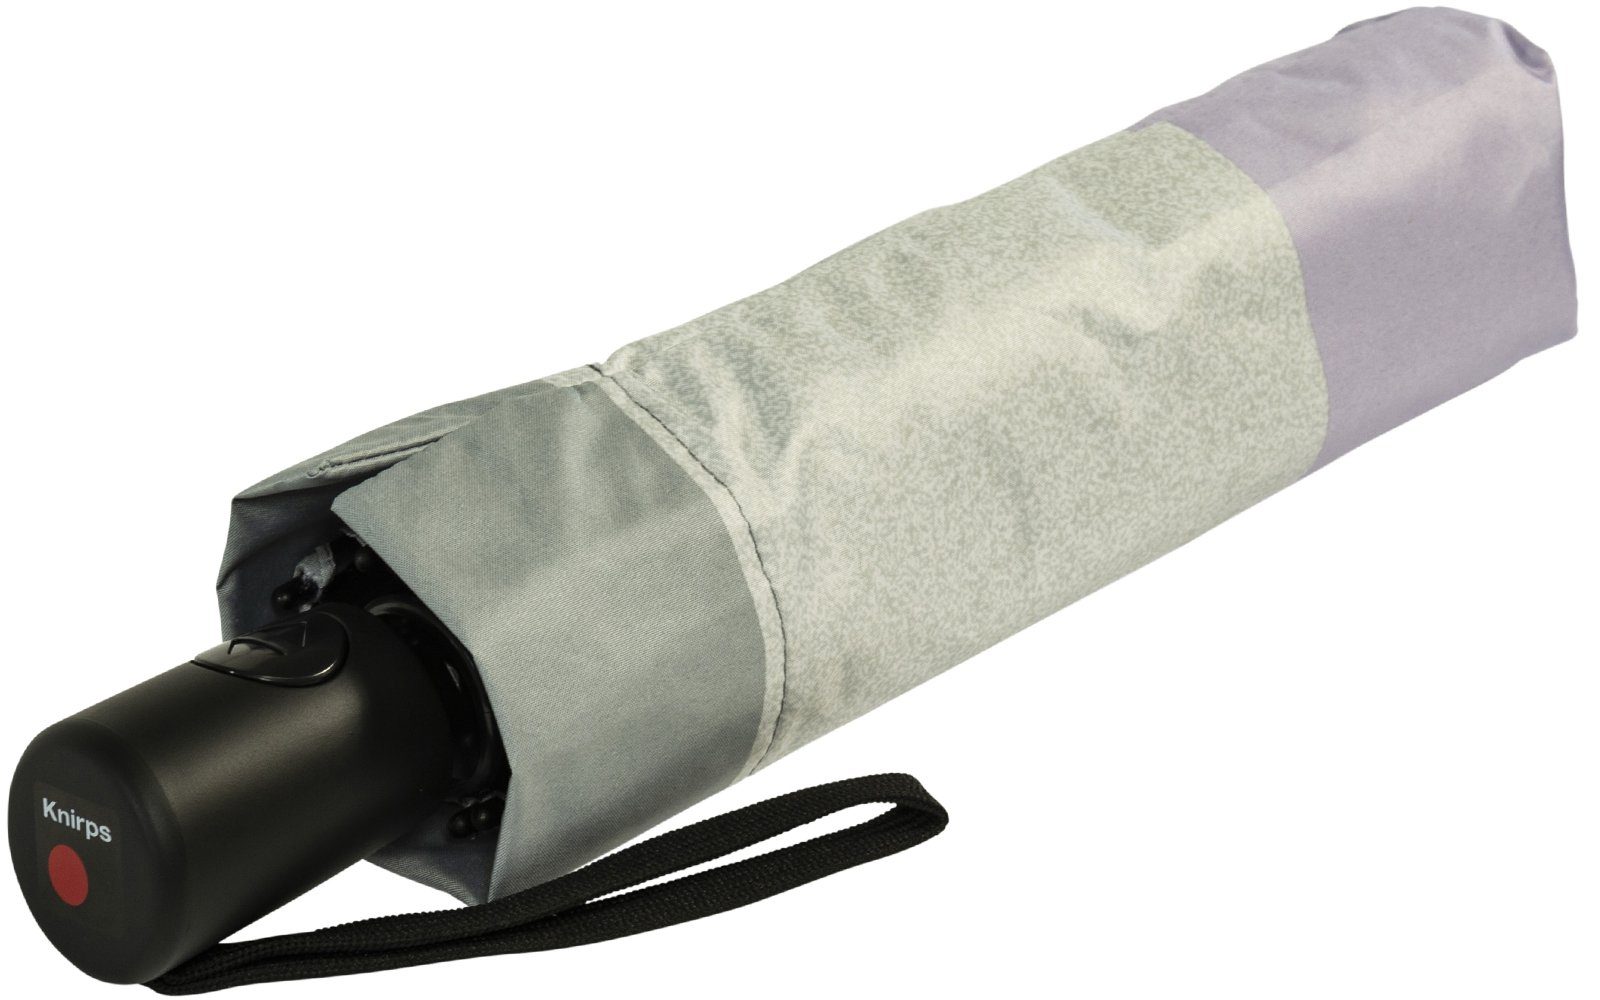 bis Knirps® Damen-Taschenschirm Hitze-Schutz A.200 95% Popy UV-Schutz, lila: Taschenregenschirm grau-lila zu 40% Auf-Zu-Automatik, mit